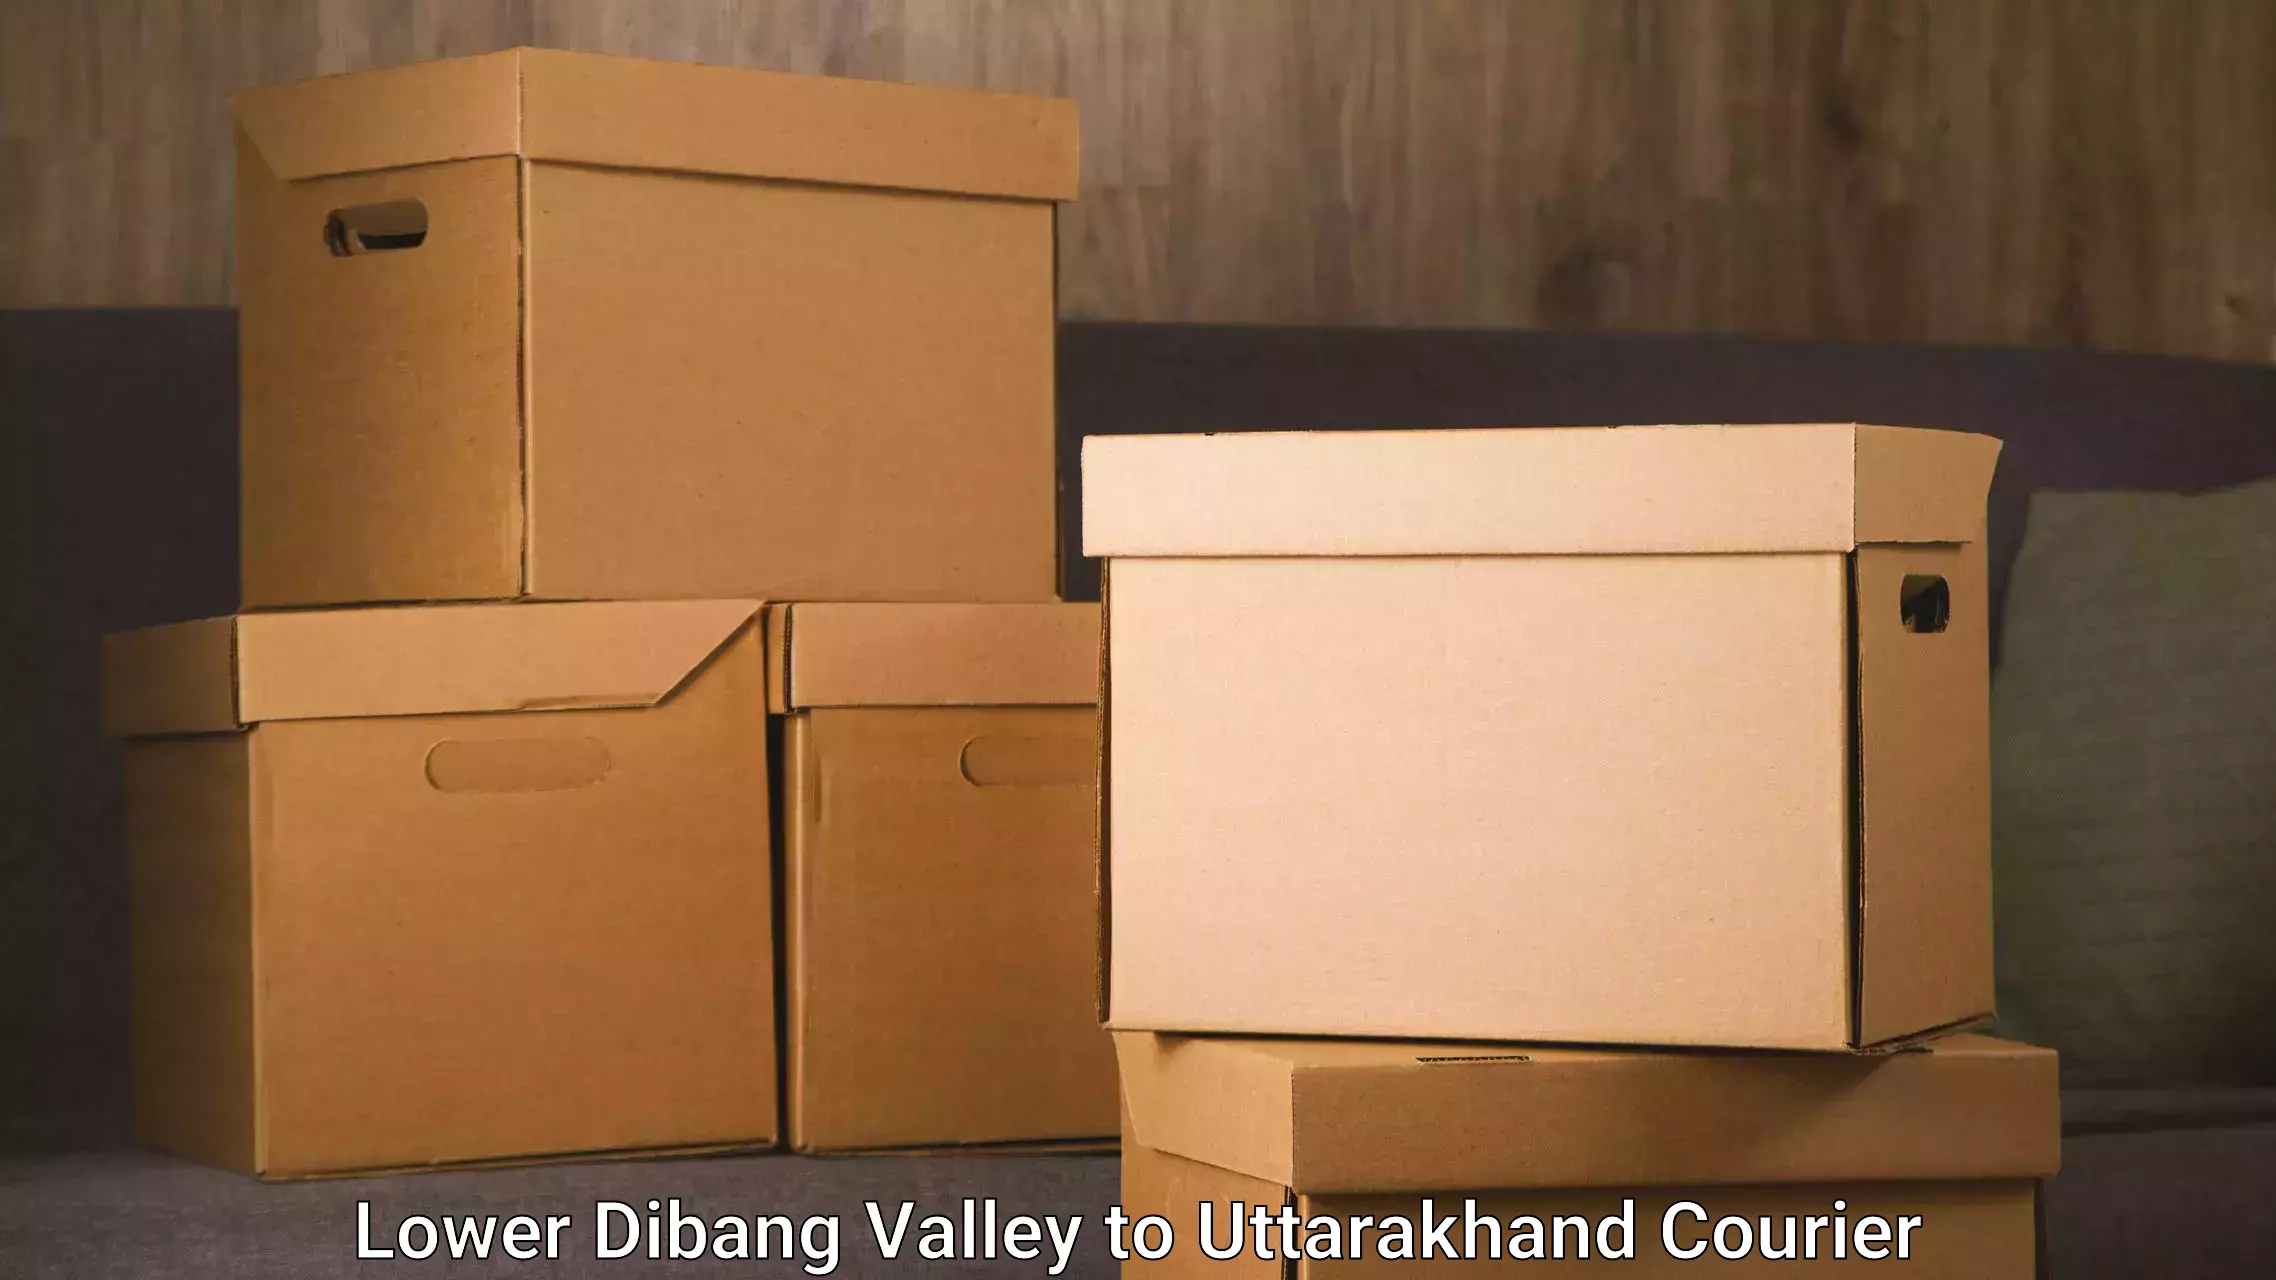 E-commerce fulfillment in Lower Dibang Valley to Uttarakhand